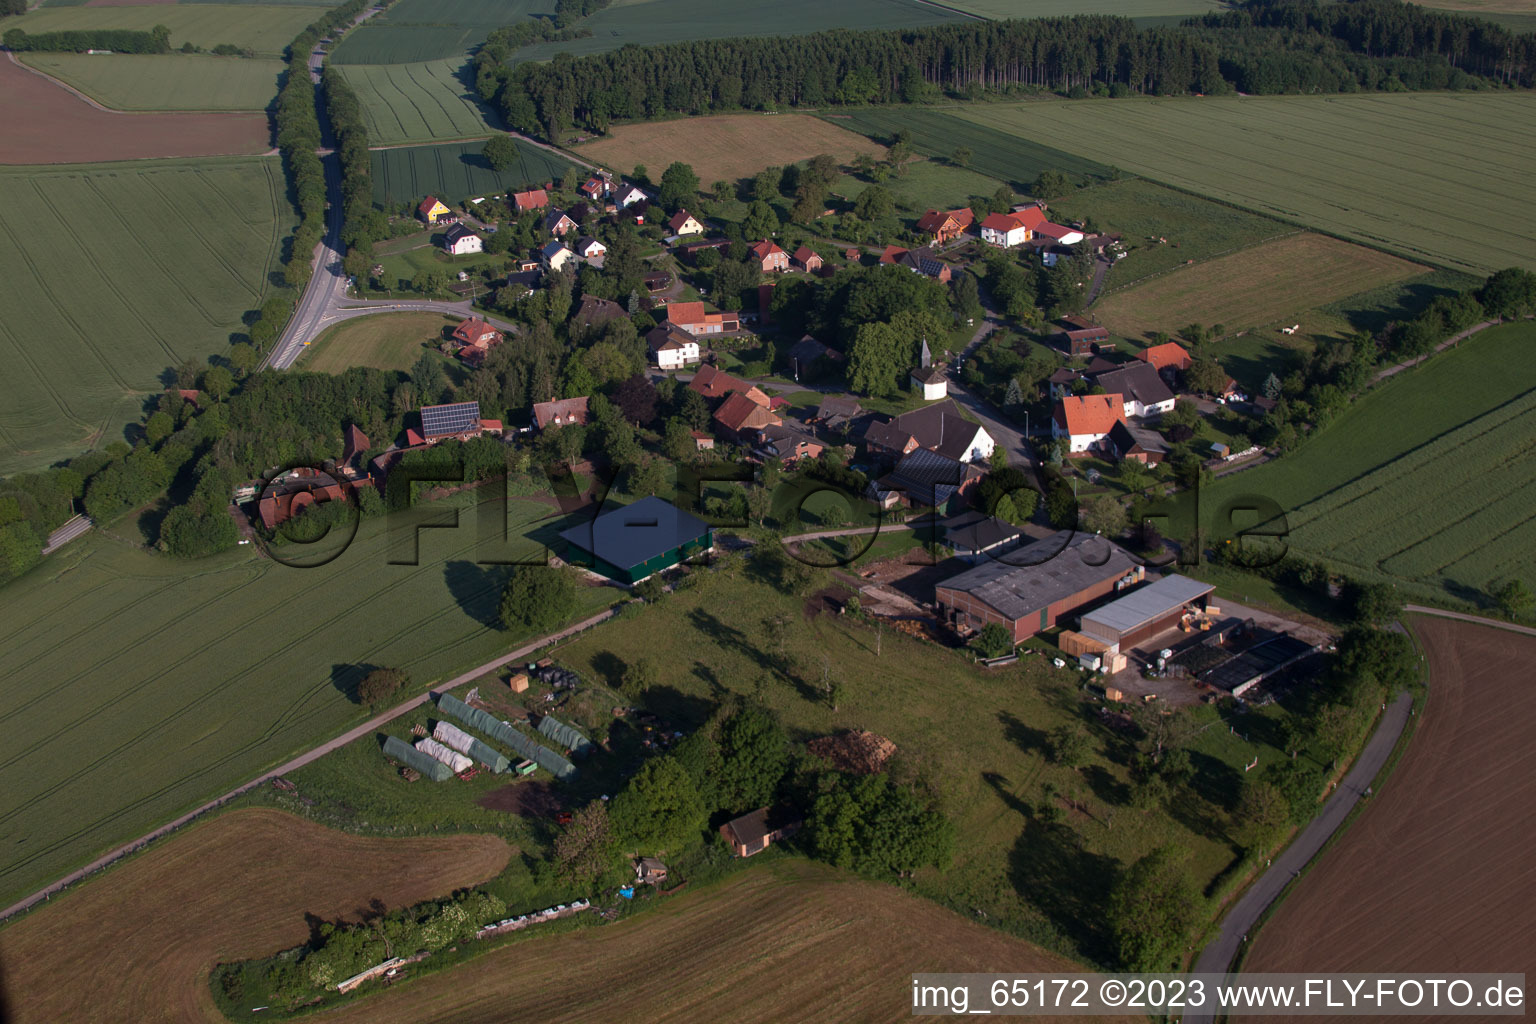 Hohehaus im Bundesland Nordrhein-Westfalen, Deutschland aus der Luft betrachtet